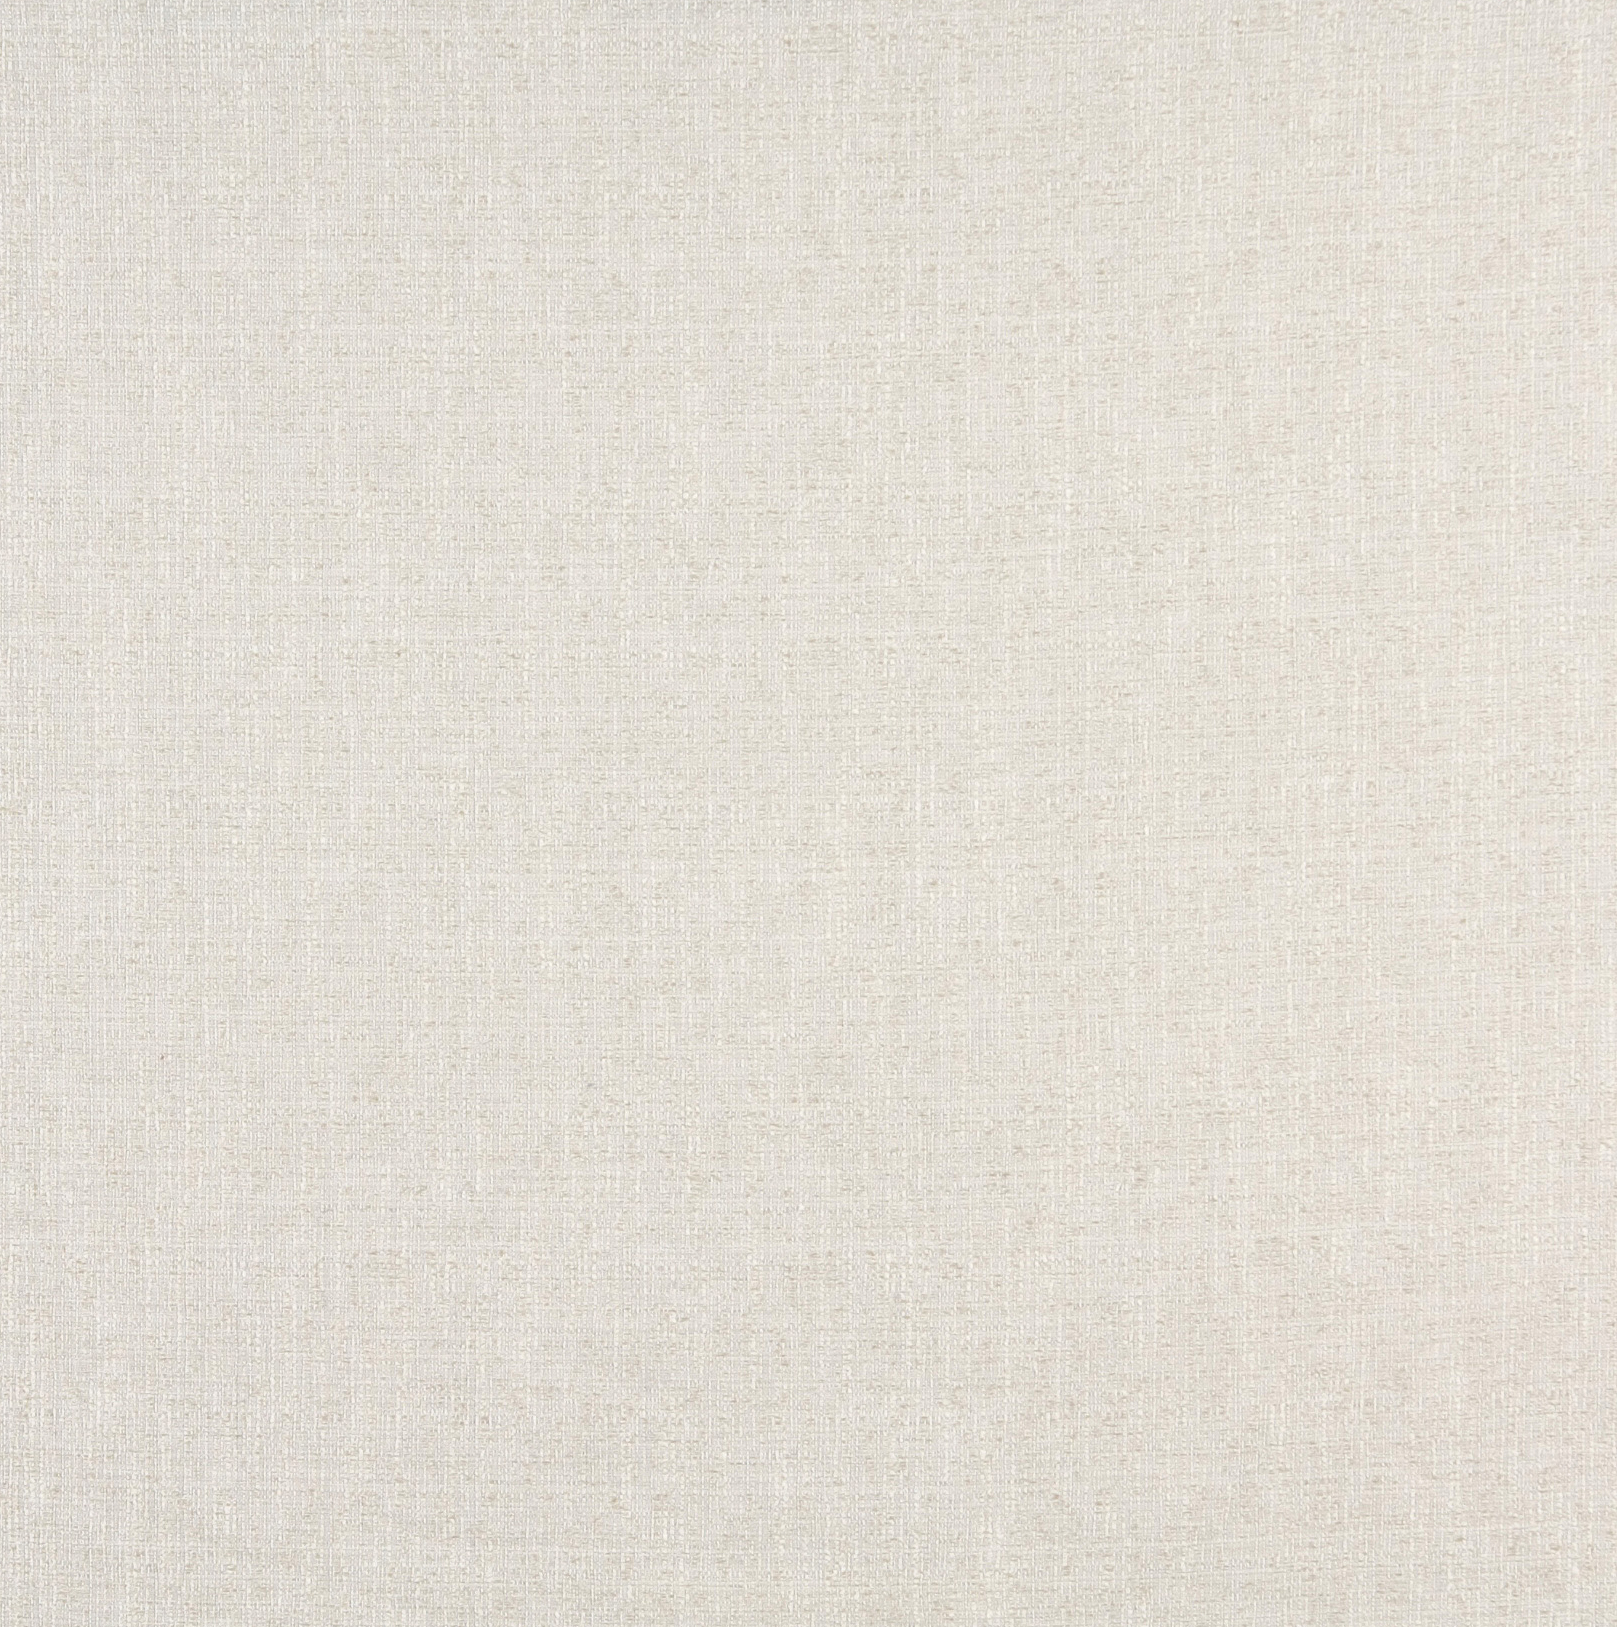 Linen White Plain Damask Upholstery Fabric